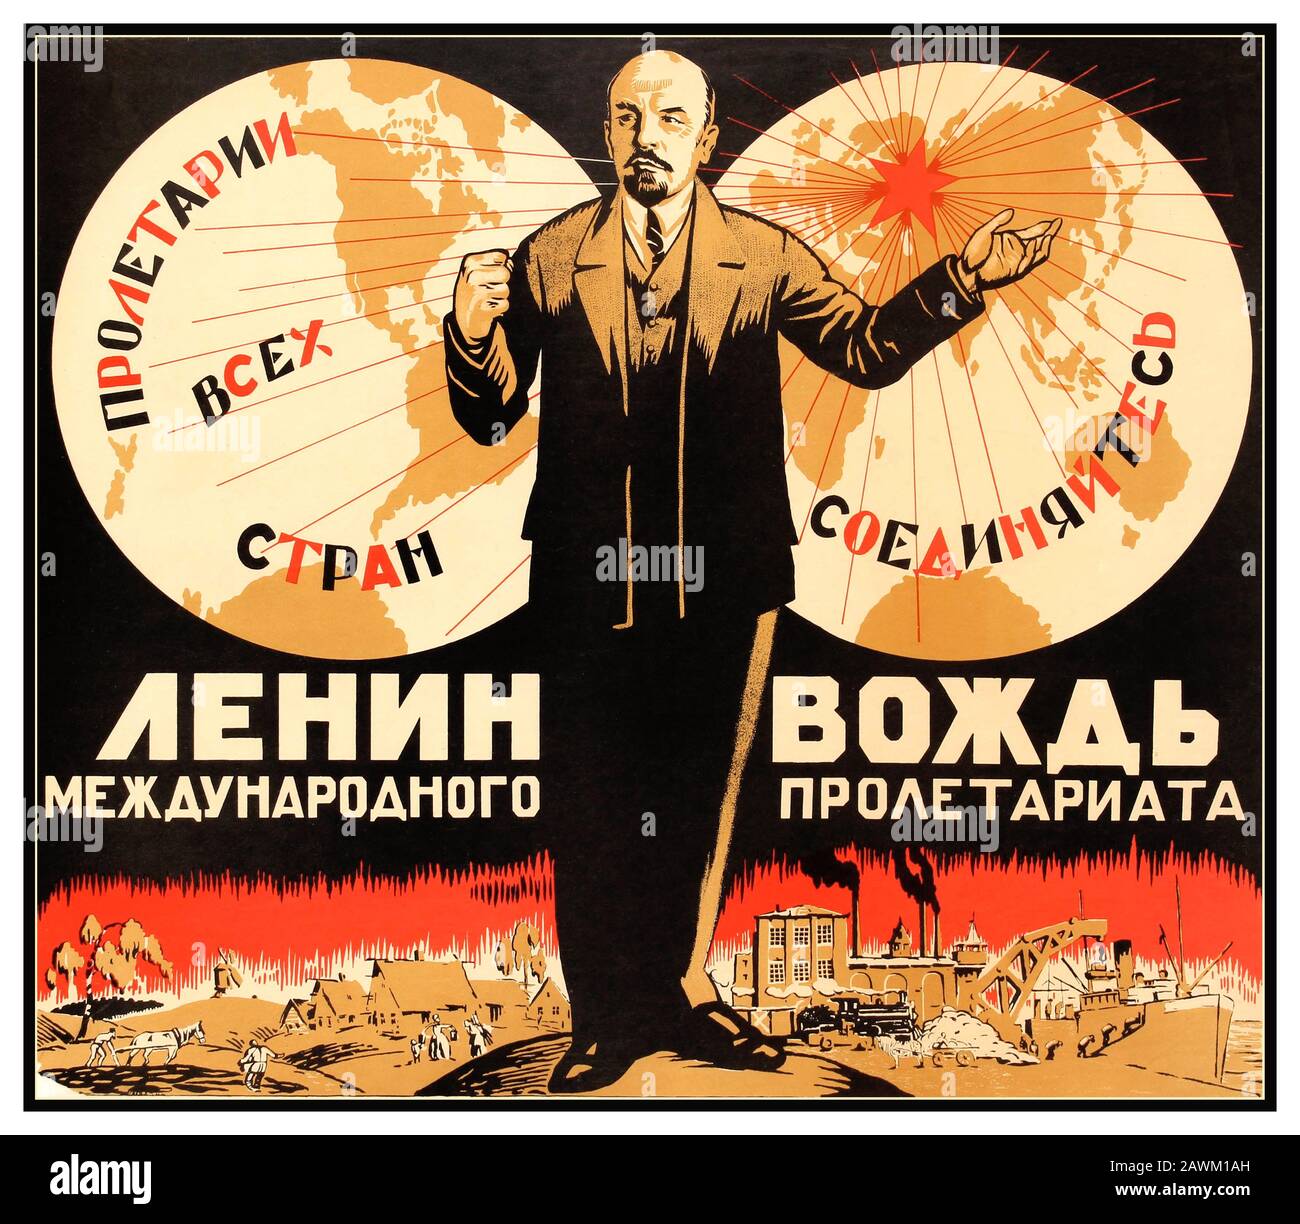 Réédition officielle du millésime soviétique de l'affiche des années 1920 d'une série officielle de meilleures conceptions d'affiches ré-enjeux. La propagande soviétique Lénine est le leader du Prolétariat international. Horizontal. Russie, Banque D'Images